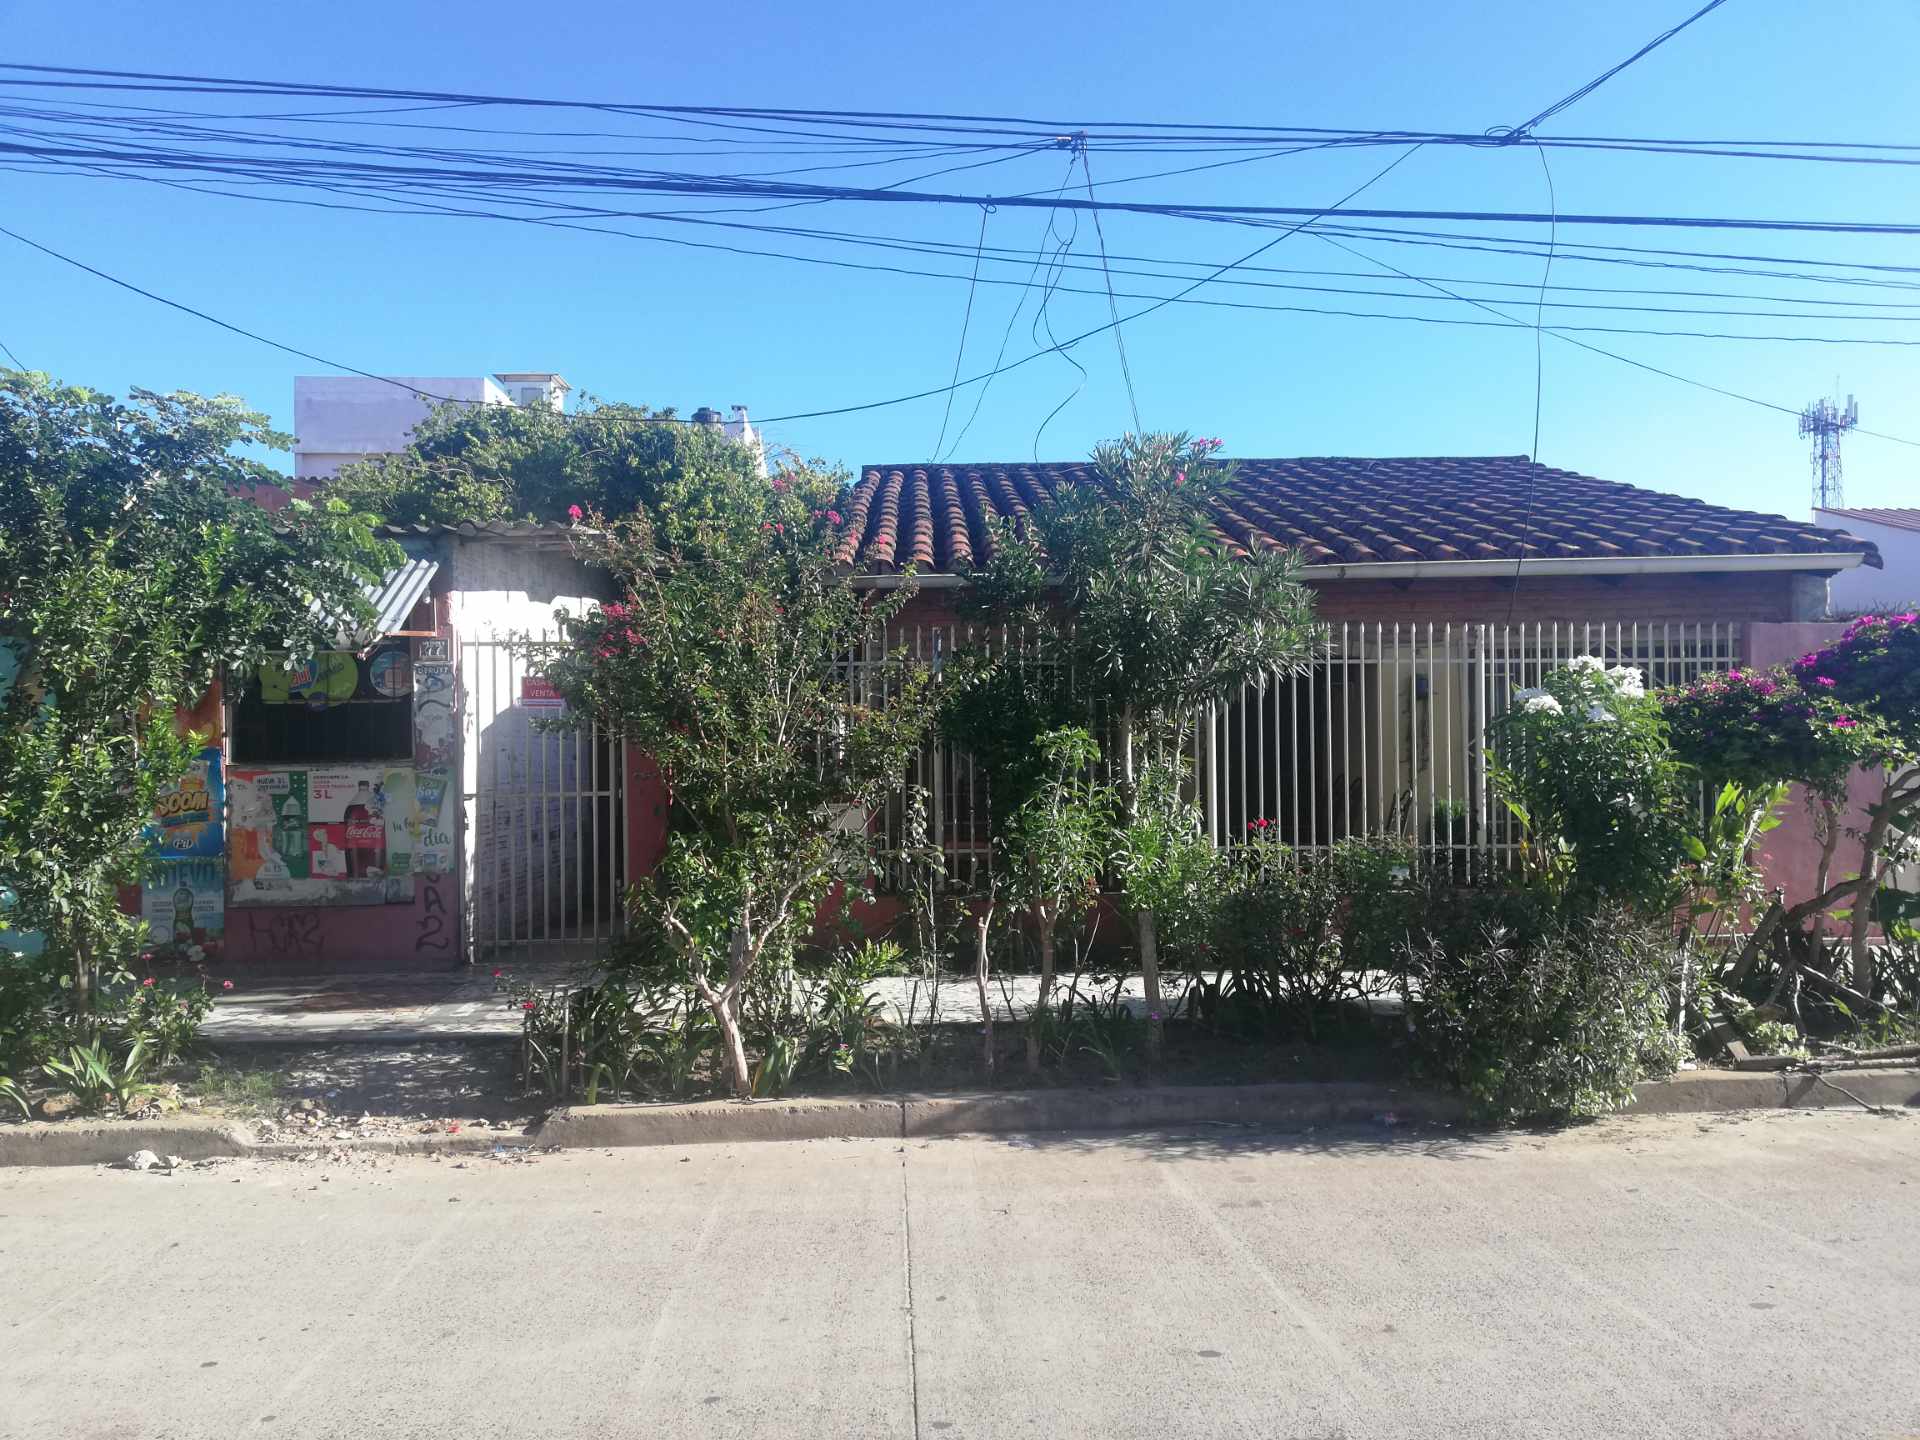 Casa en VentaBarrio oriental calle tordos 3, número de casa 77  Foto 2